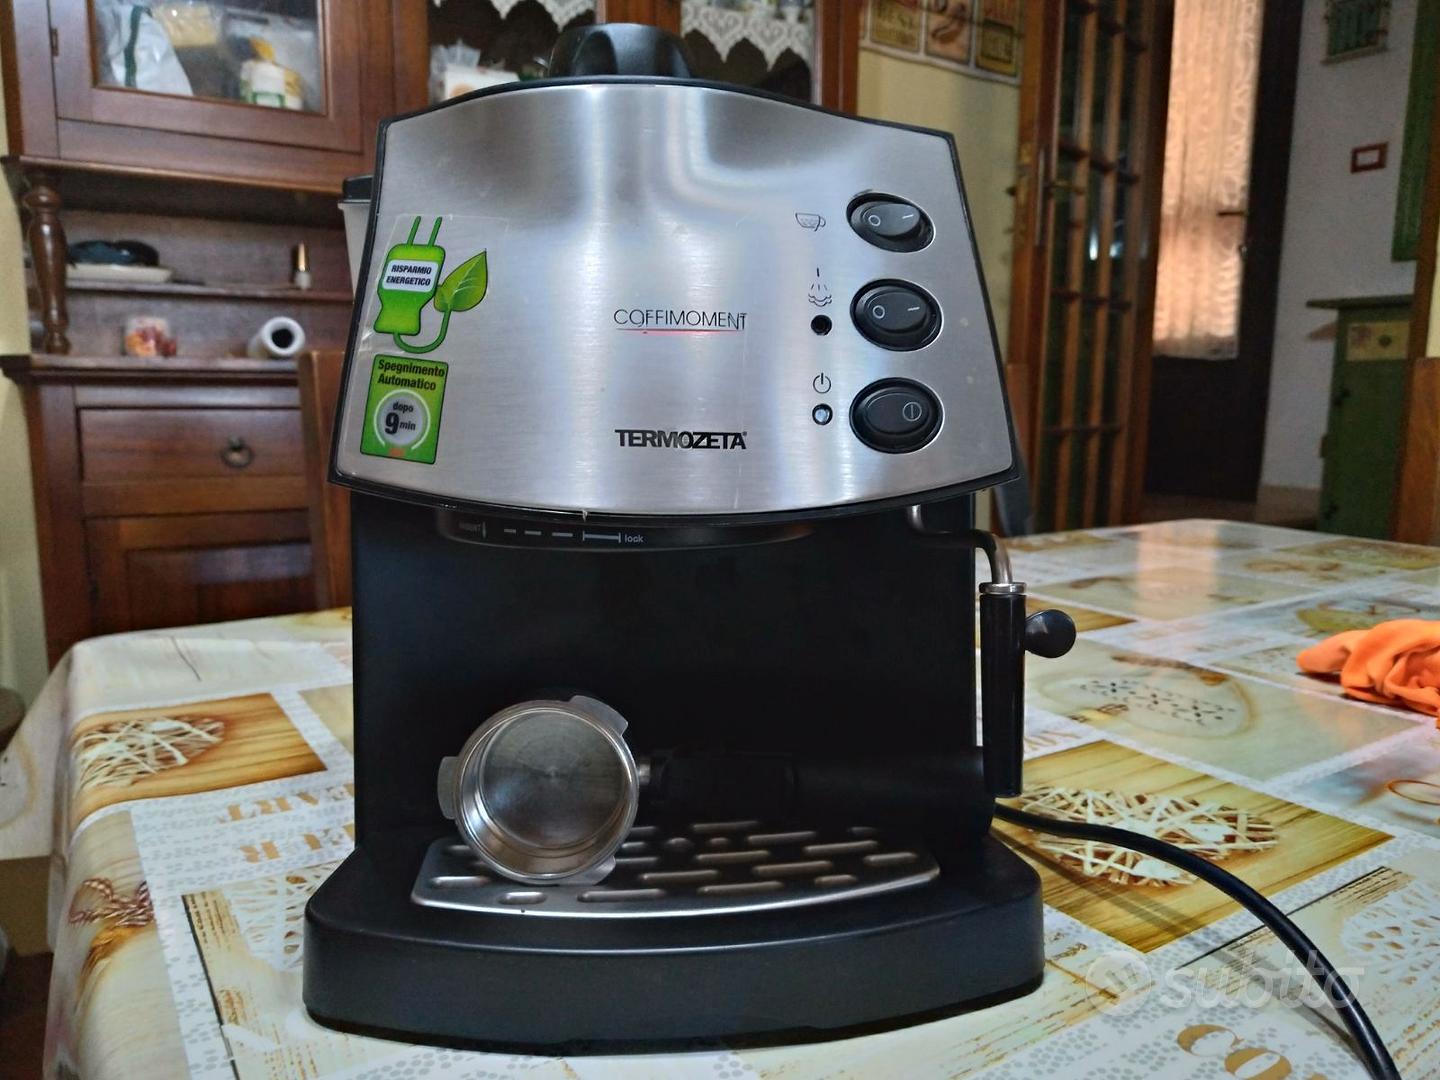 2- Macchina per caffè Termozeta Coffimoment - Elettrodomestici In vendita a  Grosseto